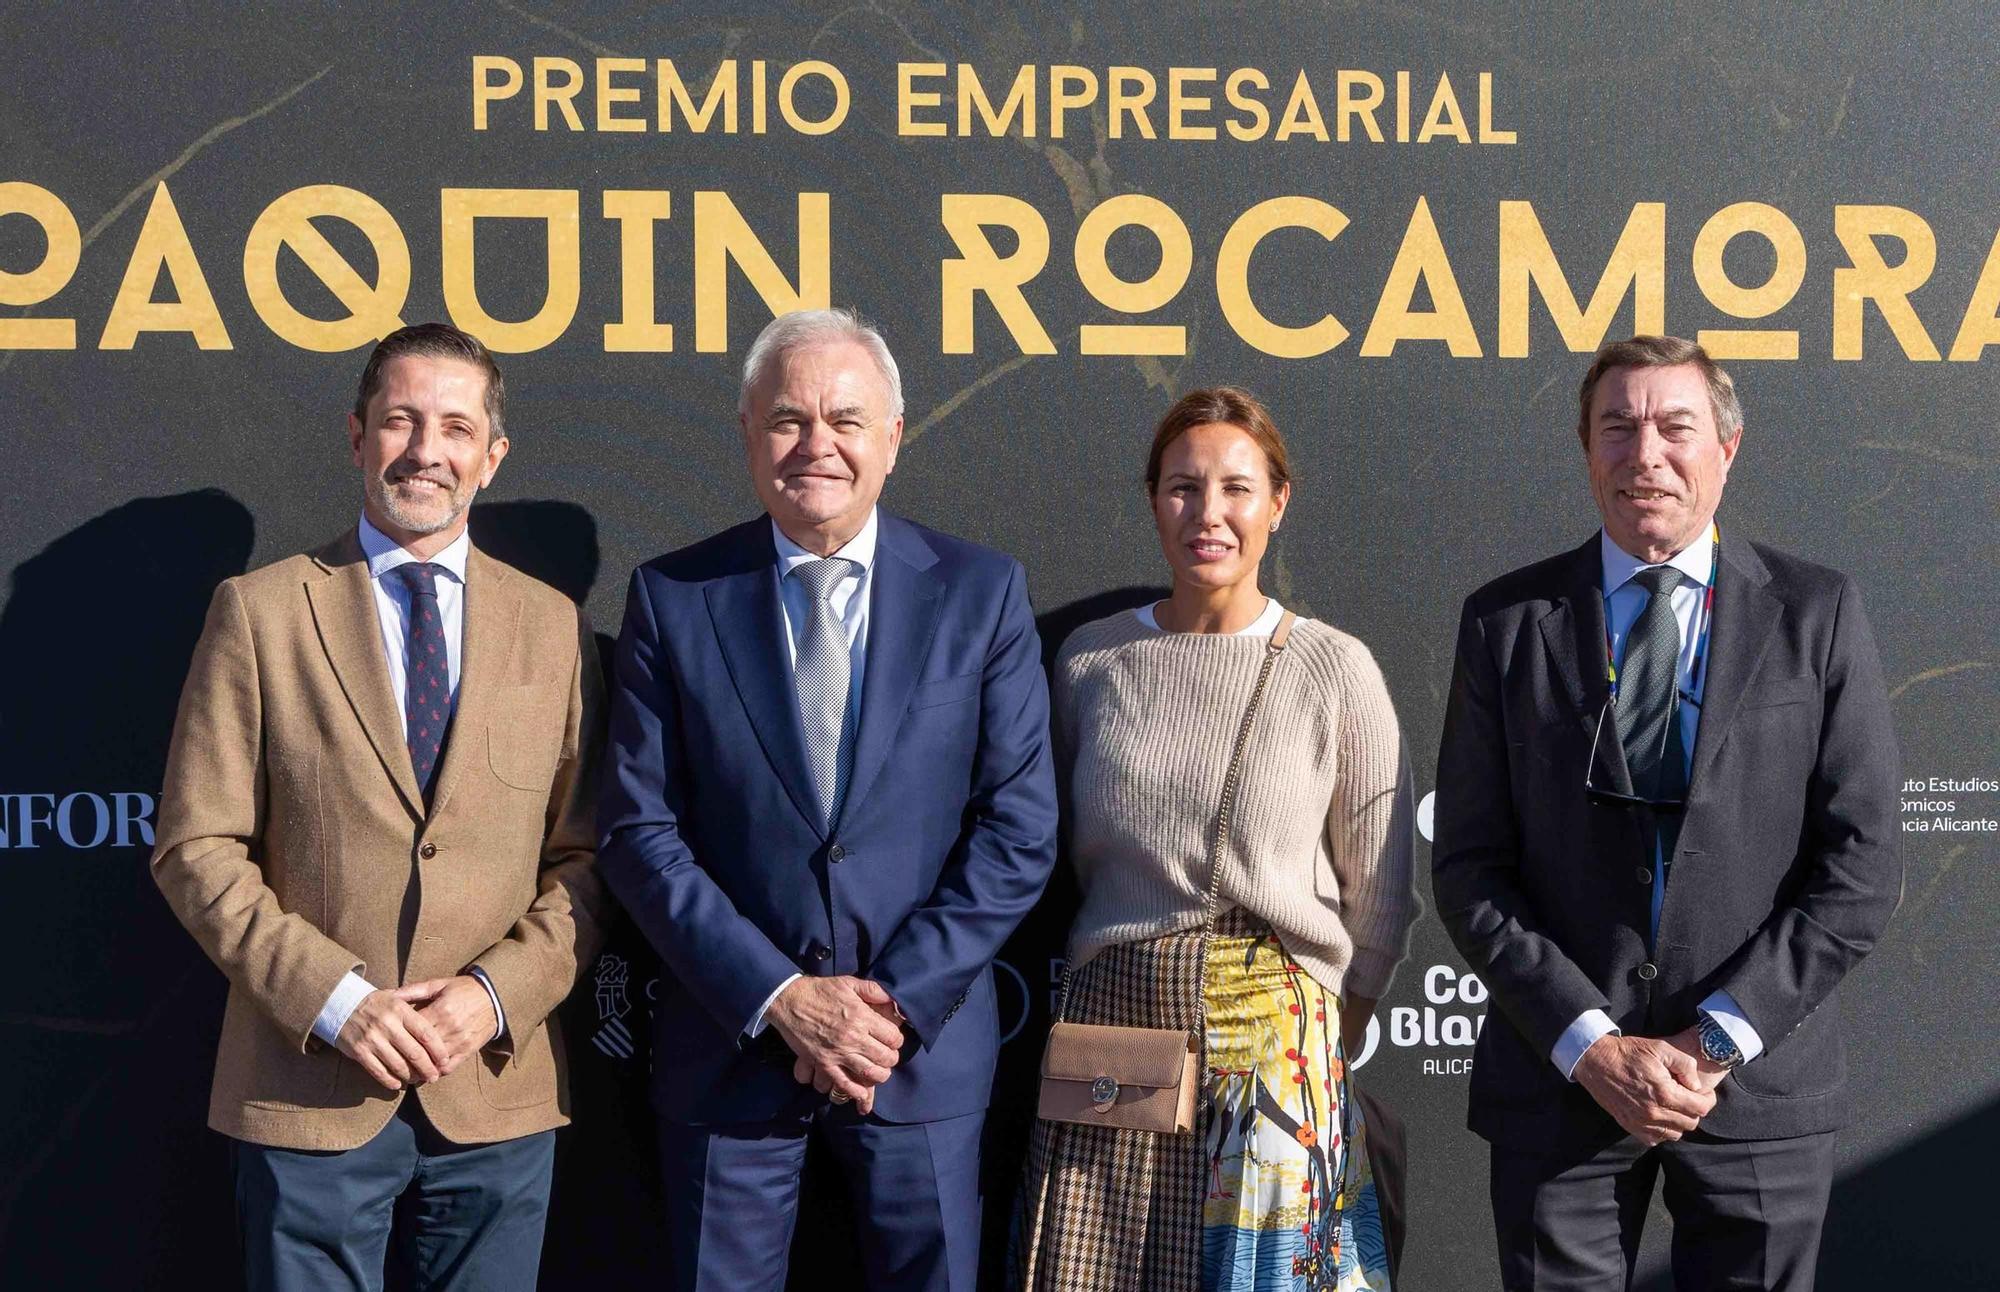 Primera edición del Premio Empresarial Joaquín Rocamora concedido a Jose Juan Fornés